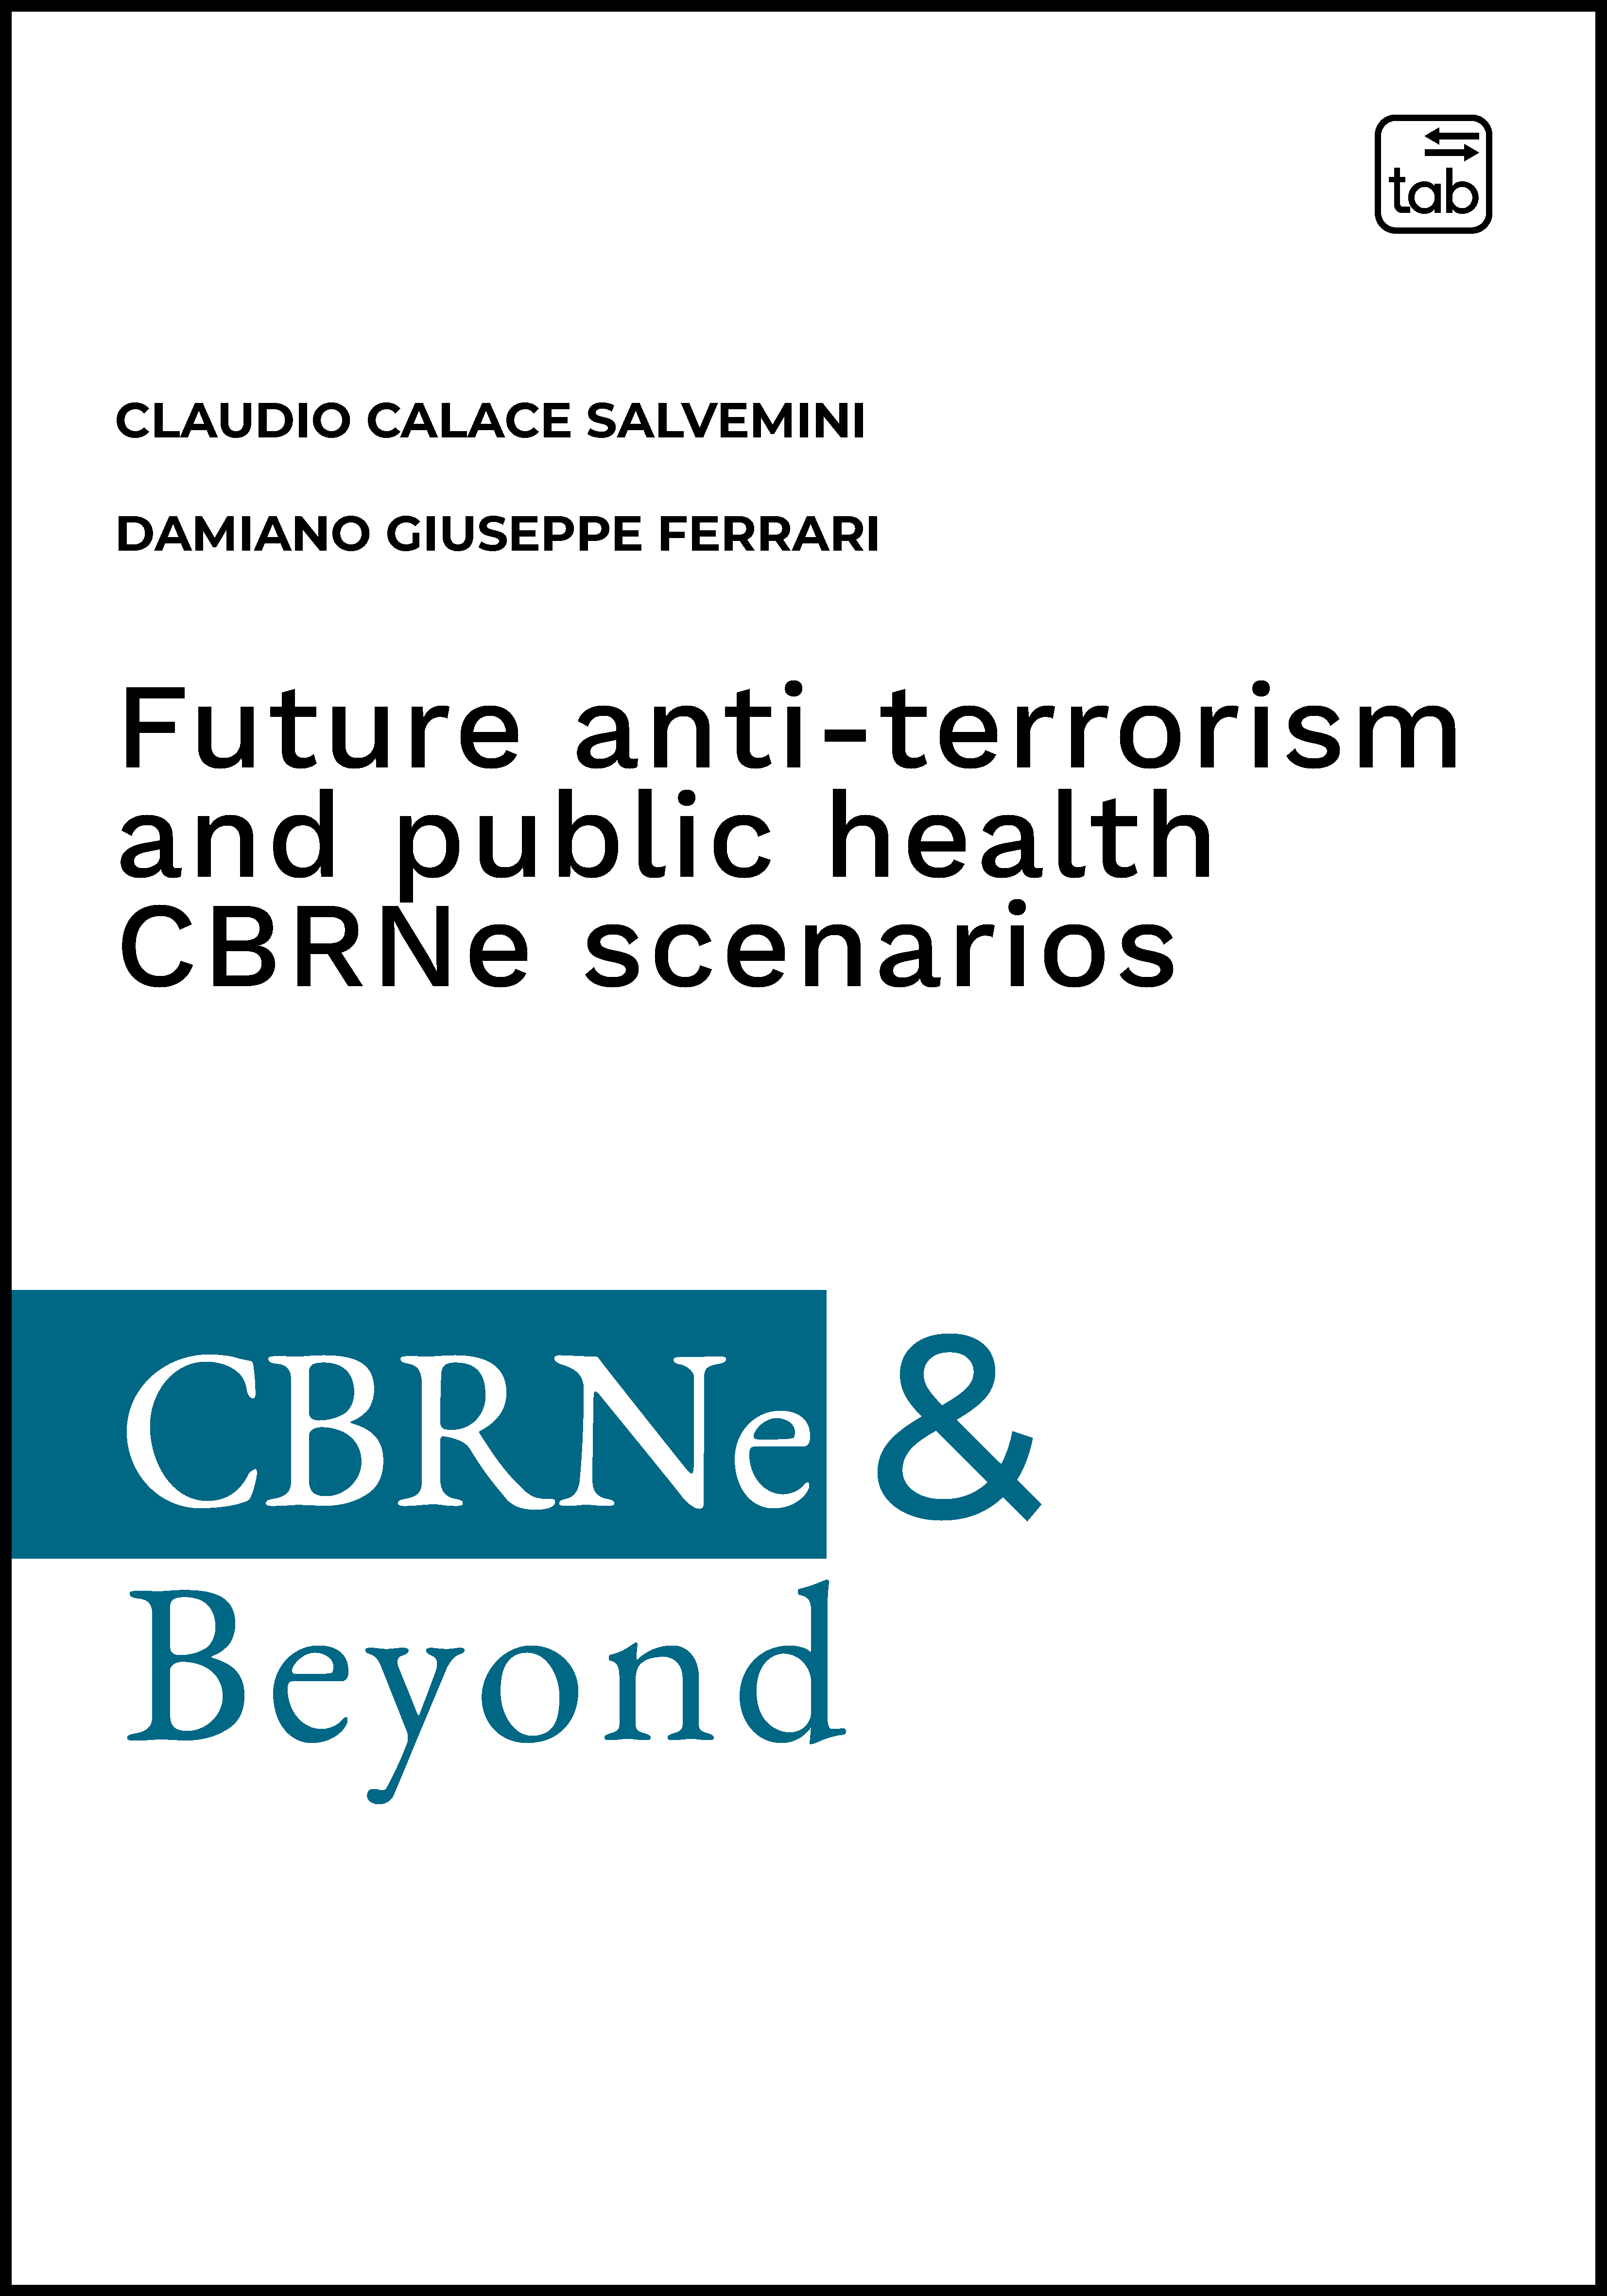 Future anti-terrorism and public health CBRNe scenarios